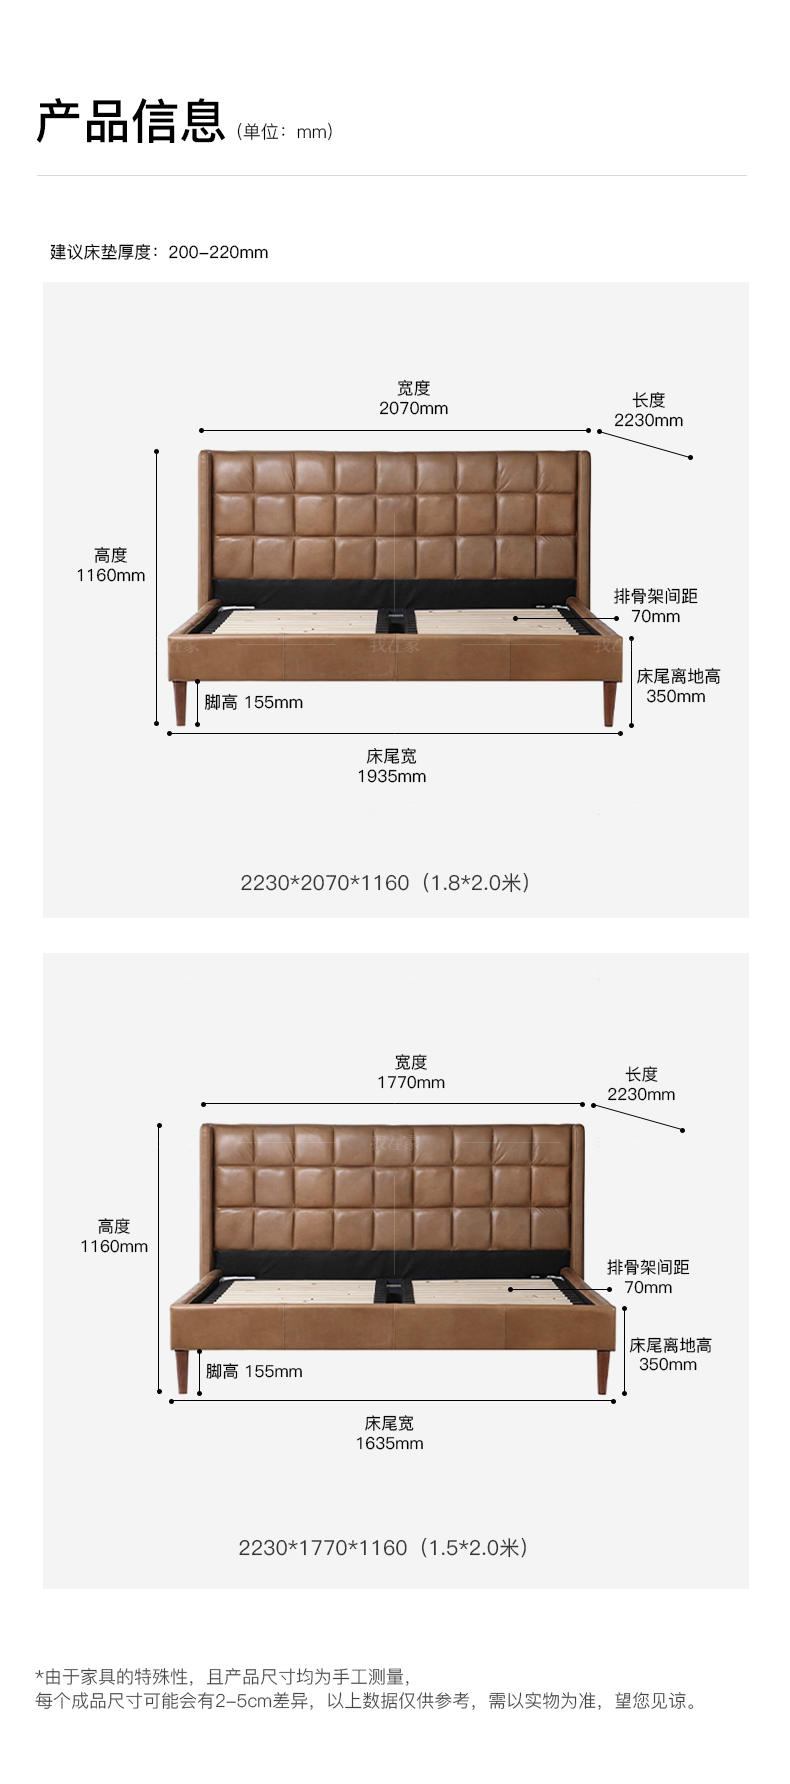 中古风风格华夫饼双人床的家具详细介绍